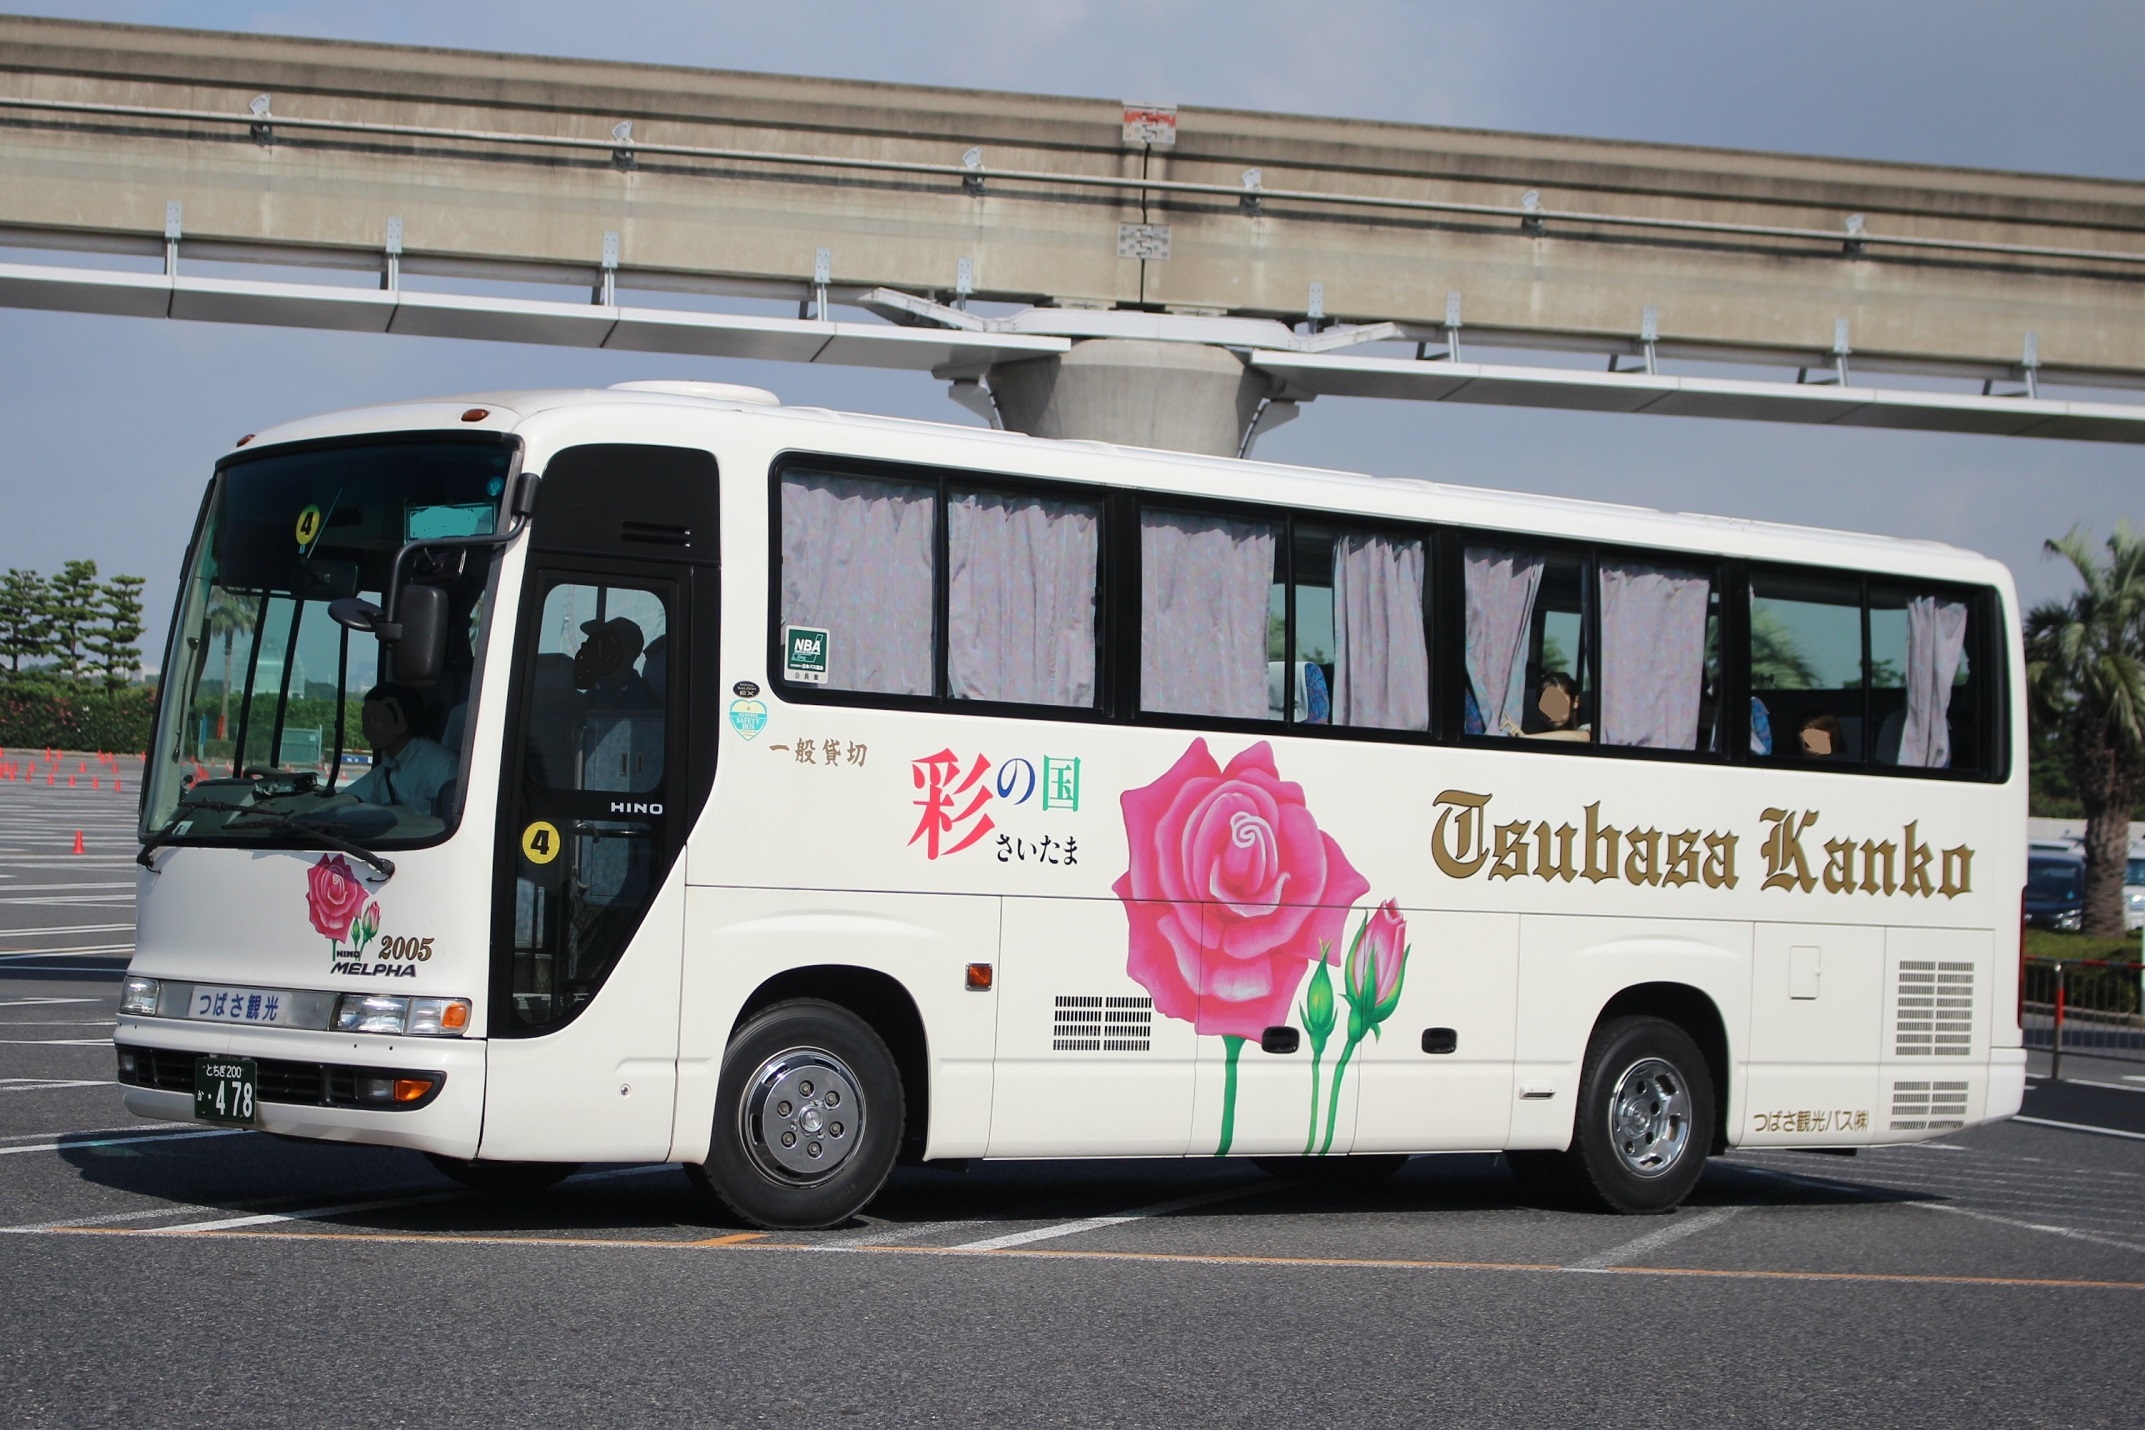 つばさ観光バス 2005